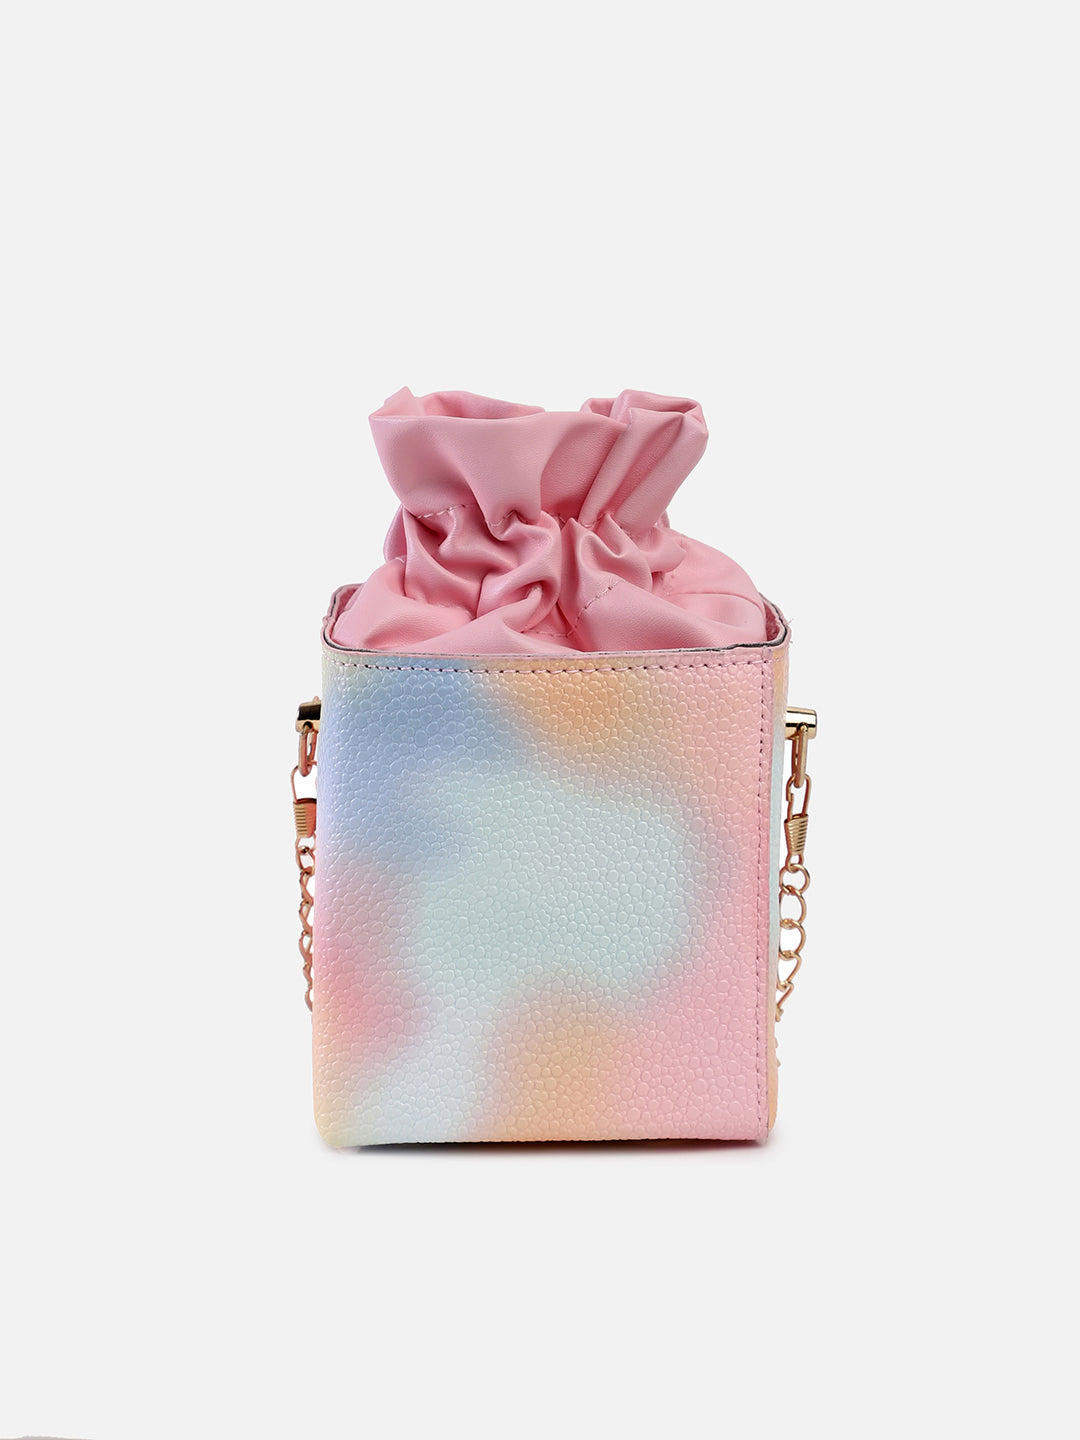 Prism Multicolor Bucket Bag